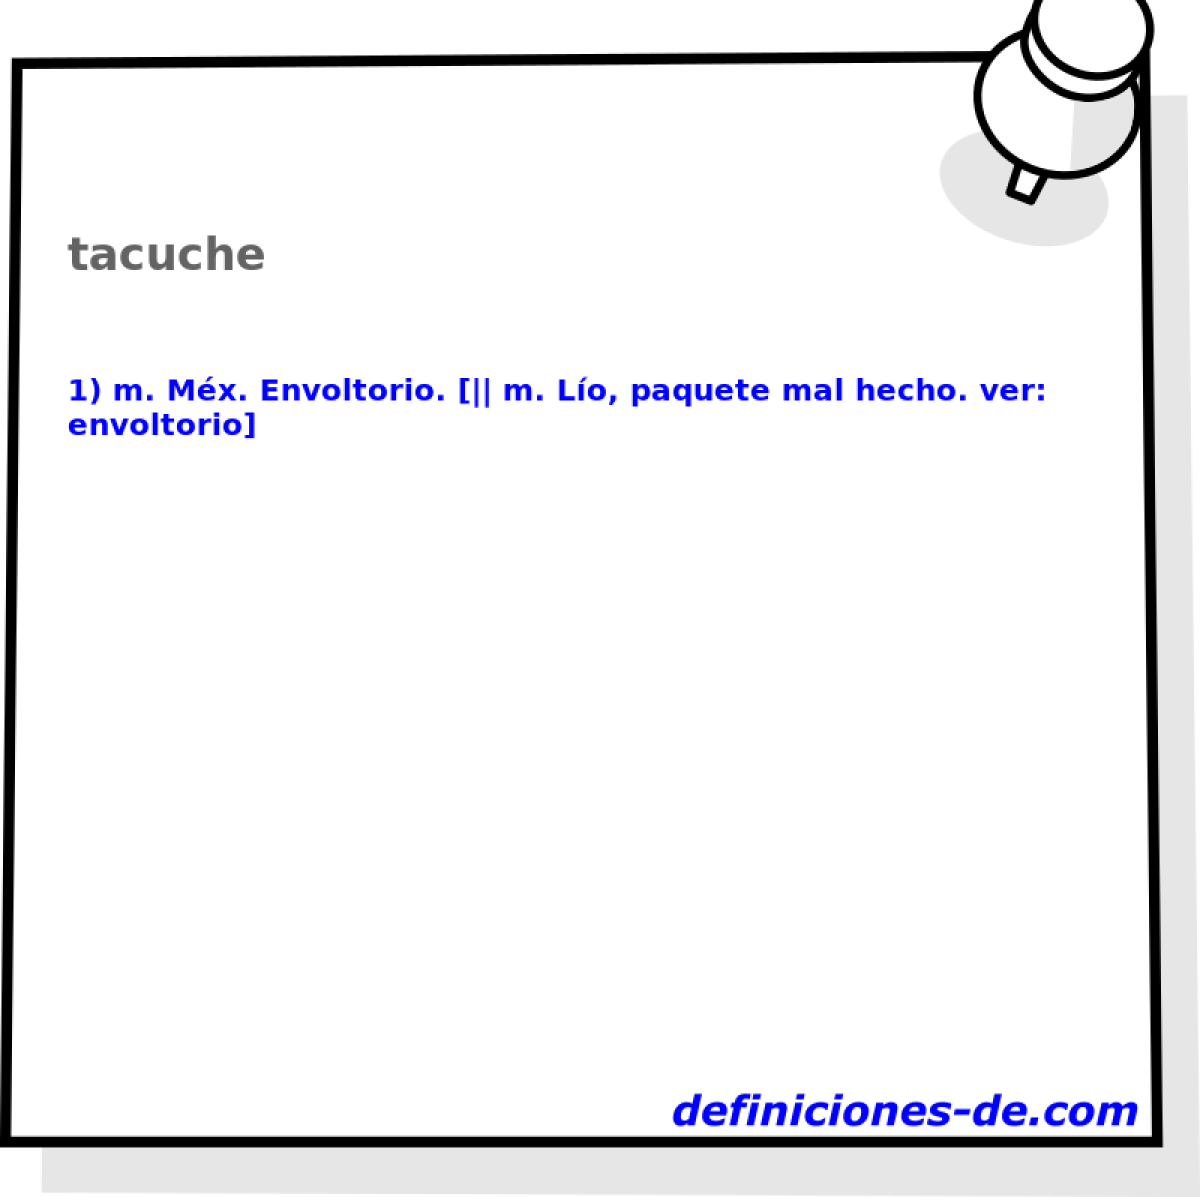 tacuche 